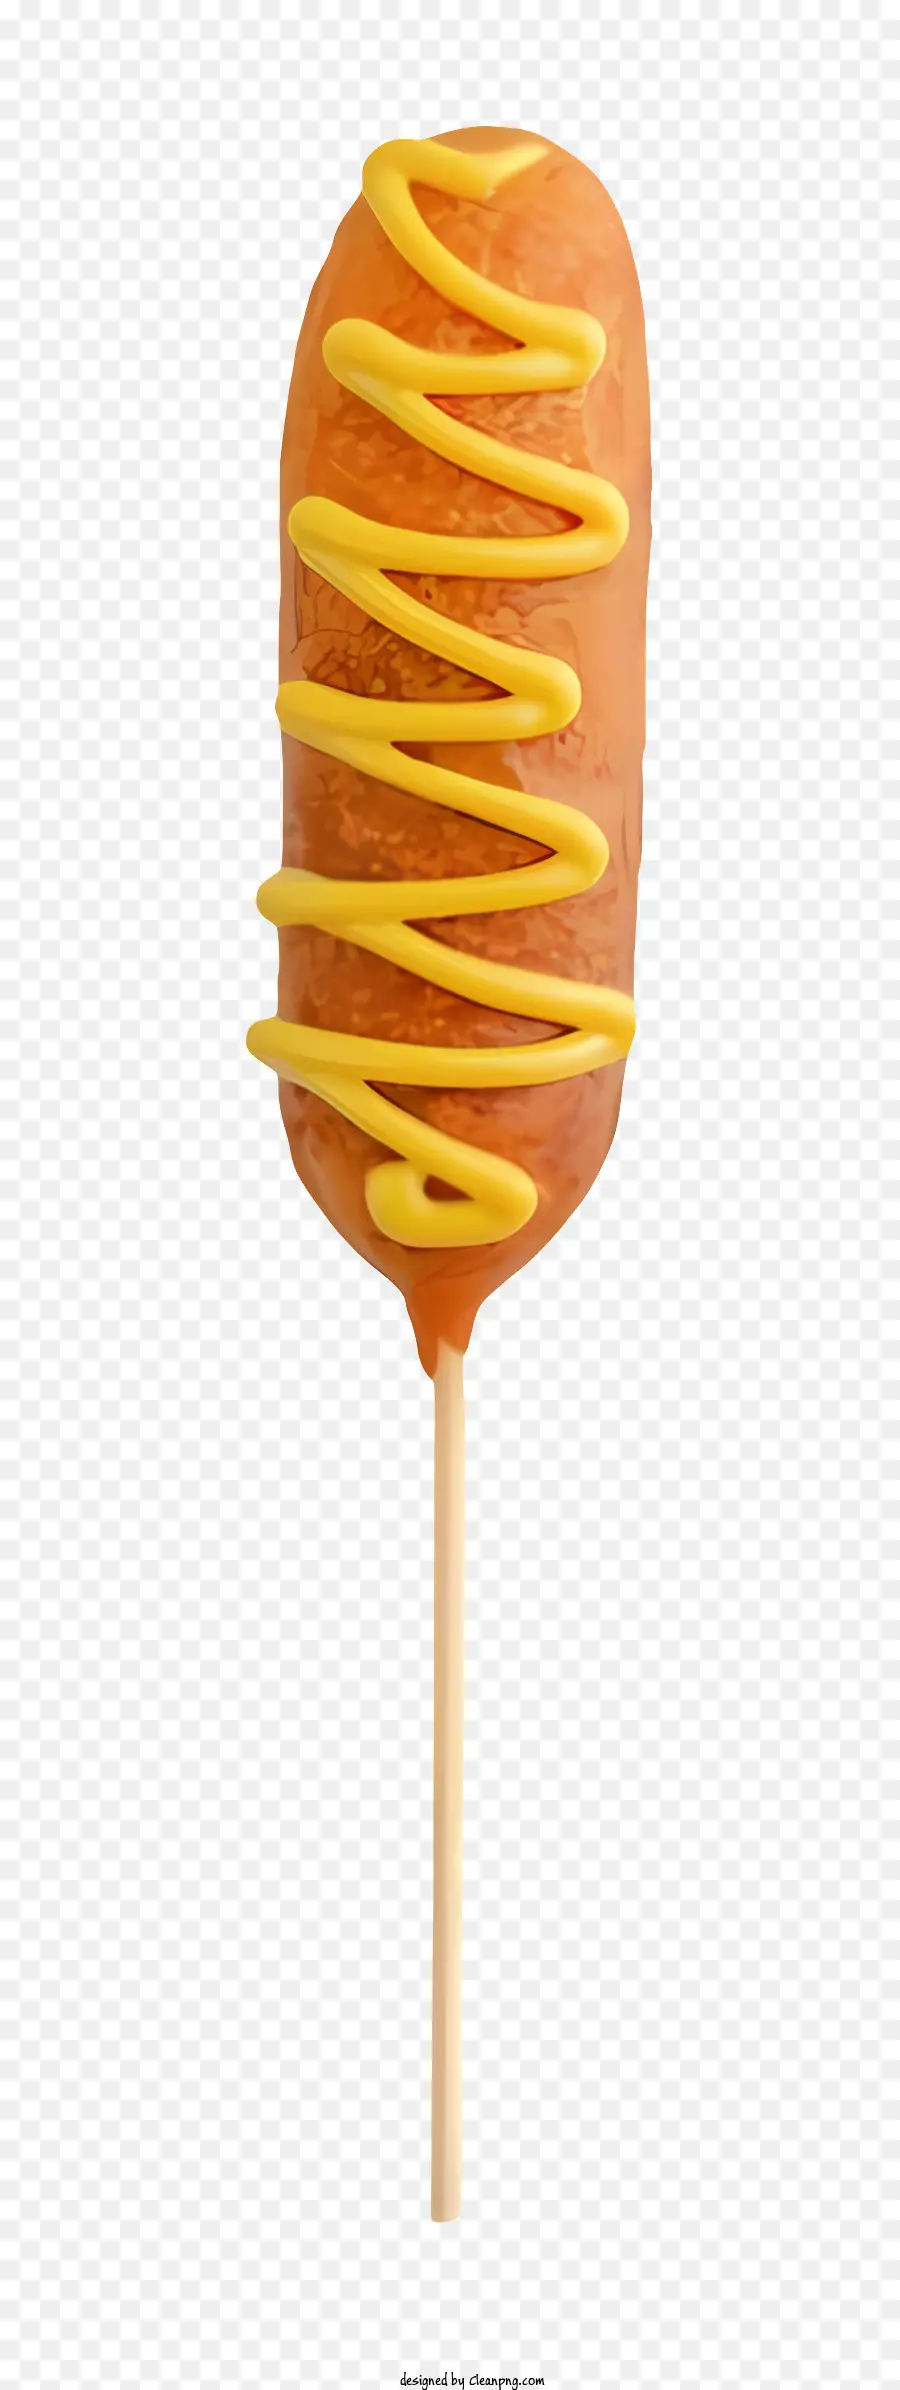 Caramella Caramella su un bastoncino giallo caramelle vorticose lecca -lecca con caramelle al caramello glassa - Lollipop di caramello giallo con turbinio della glassa bianca